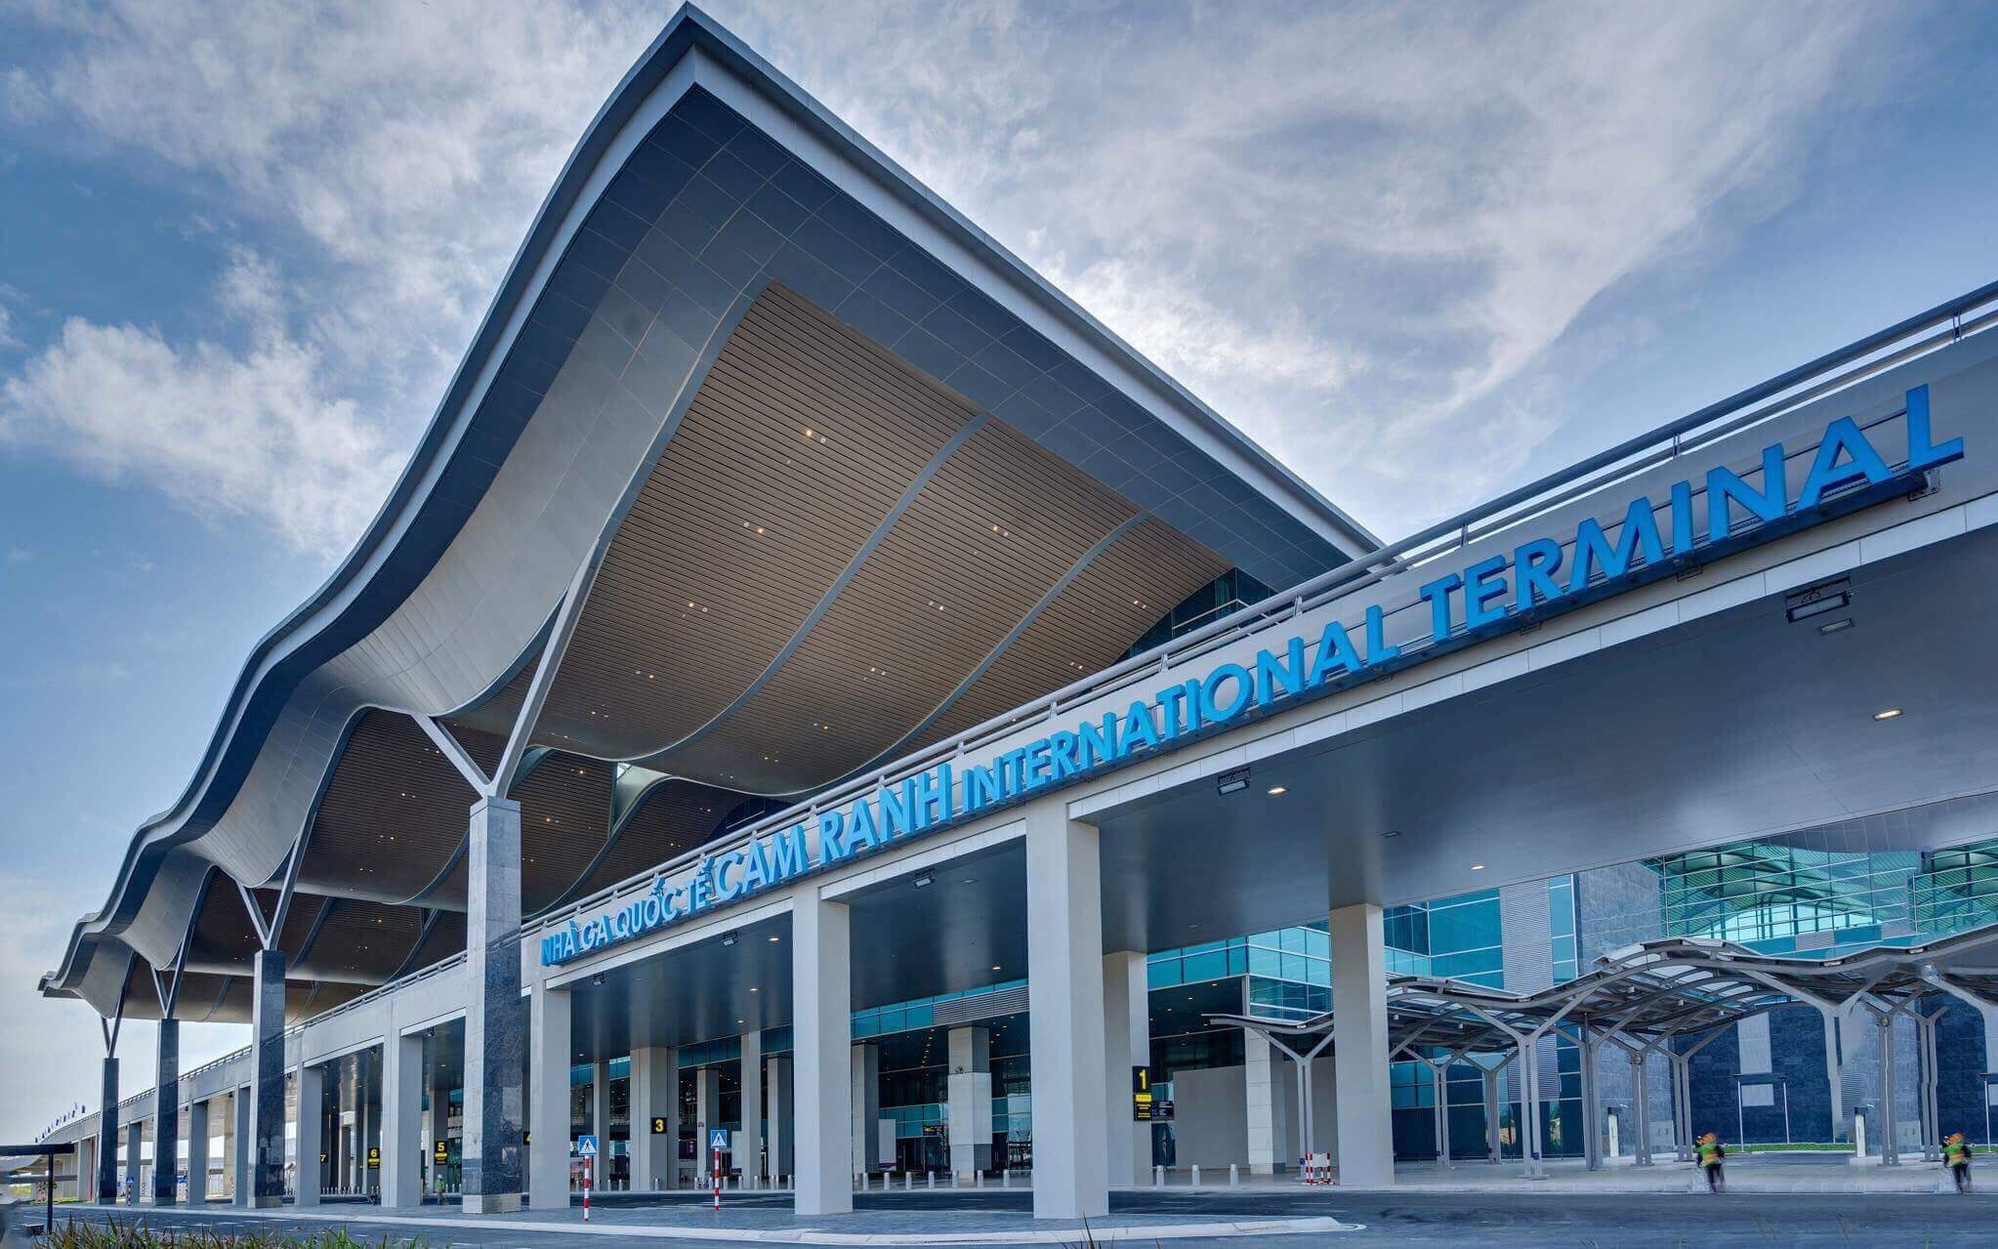 Phá thế độc quyền hàng không của ACV: 2 nhà ga quốc tế Đà Nẵng, Cam Ranh lãi 750 tỷ đồng trong năm 2019